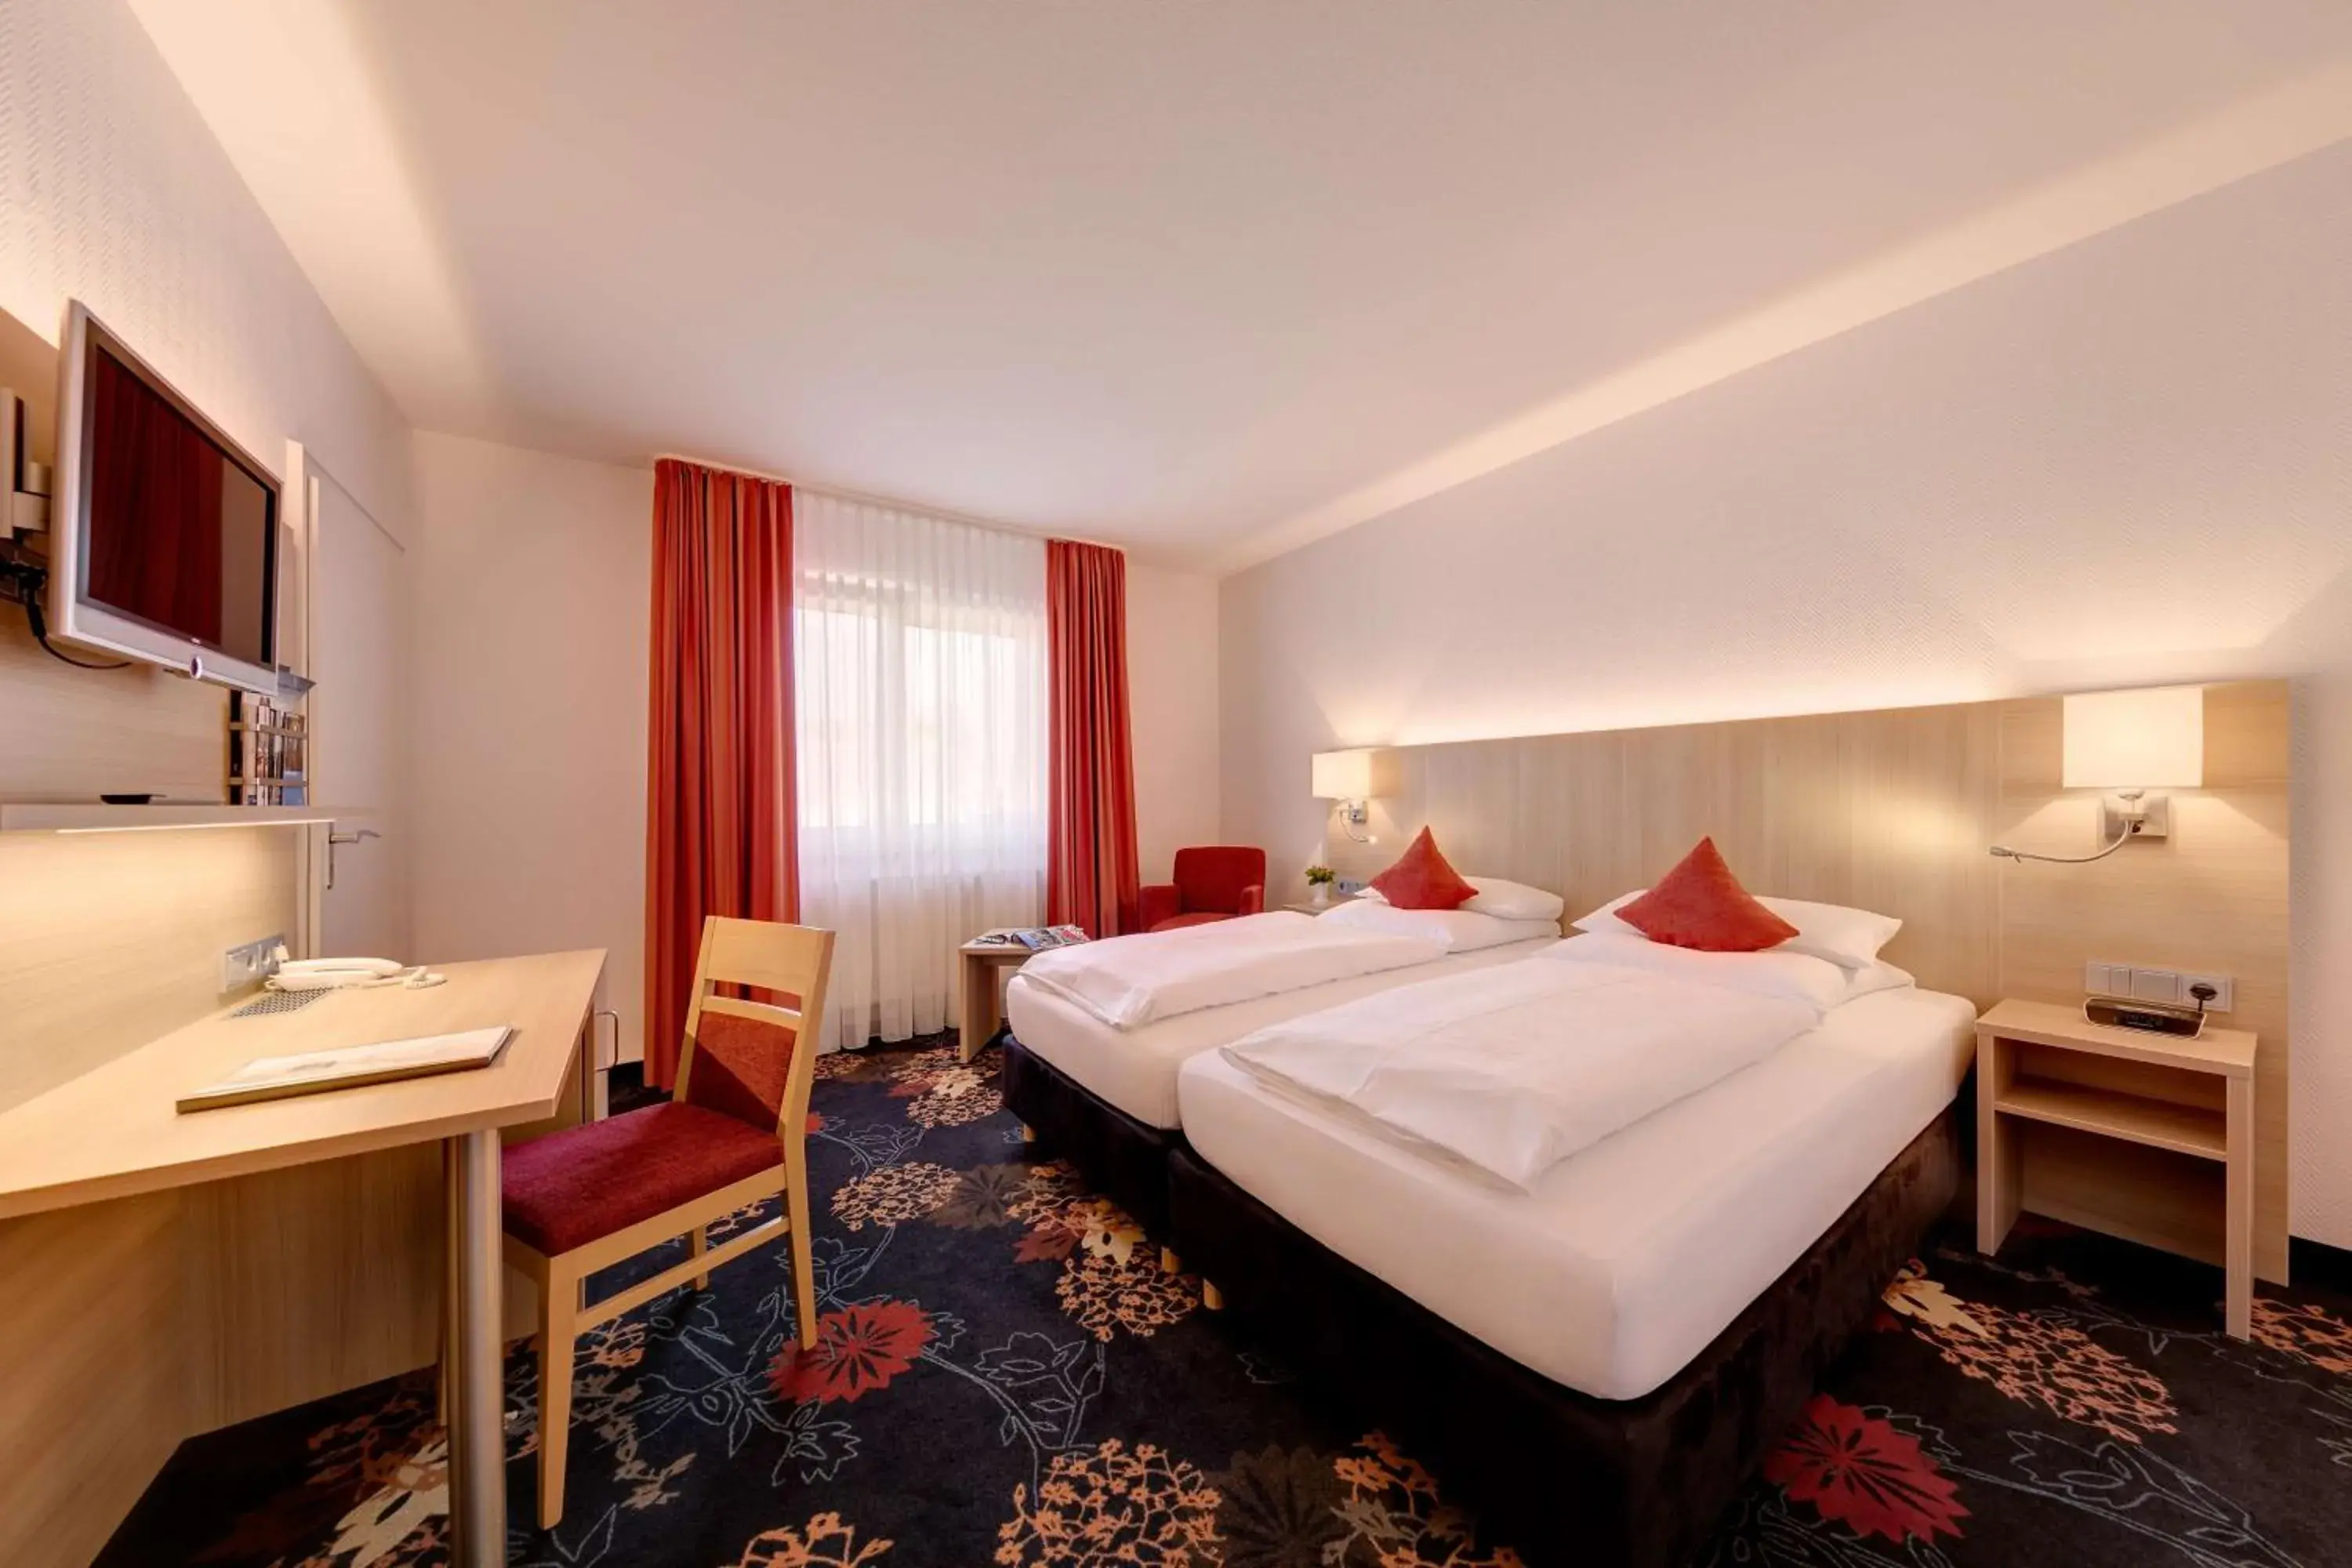 Bedroom, Bed in Best Western Blankenburg Hotel